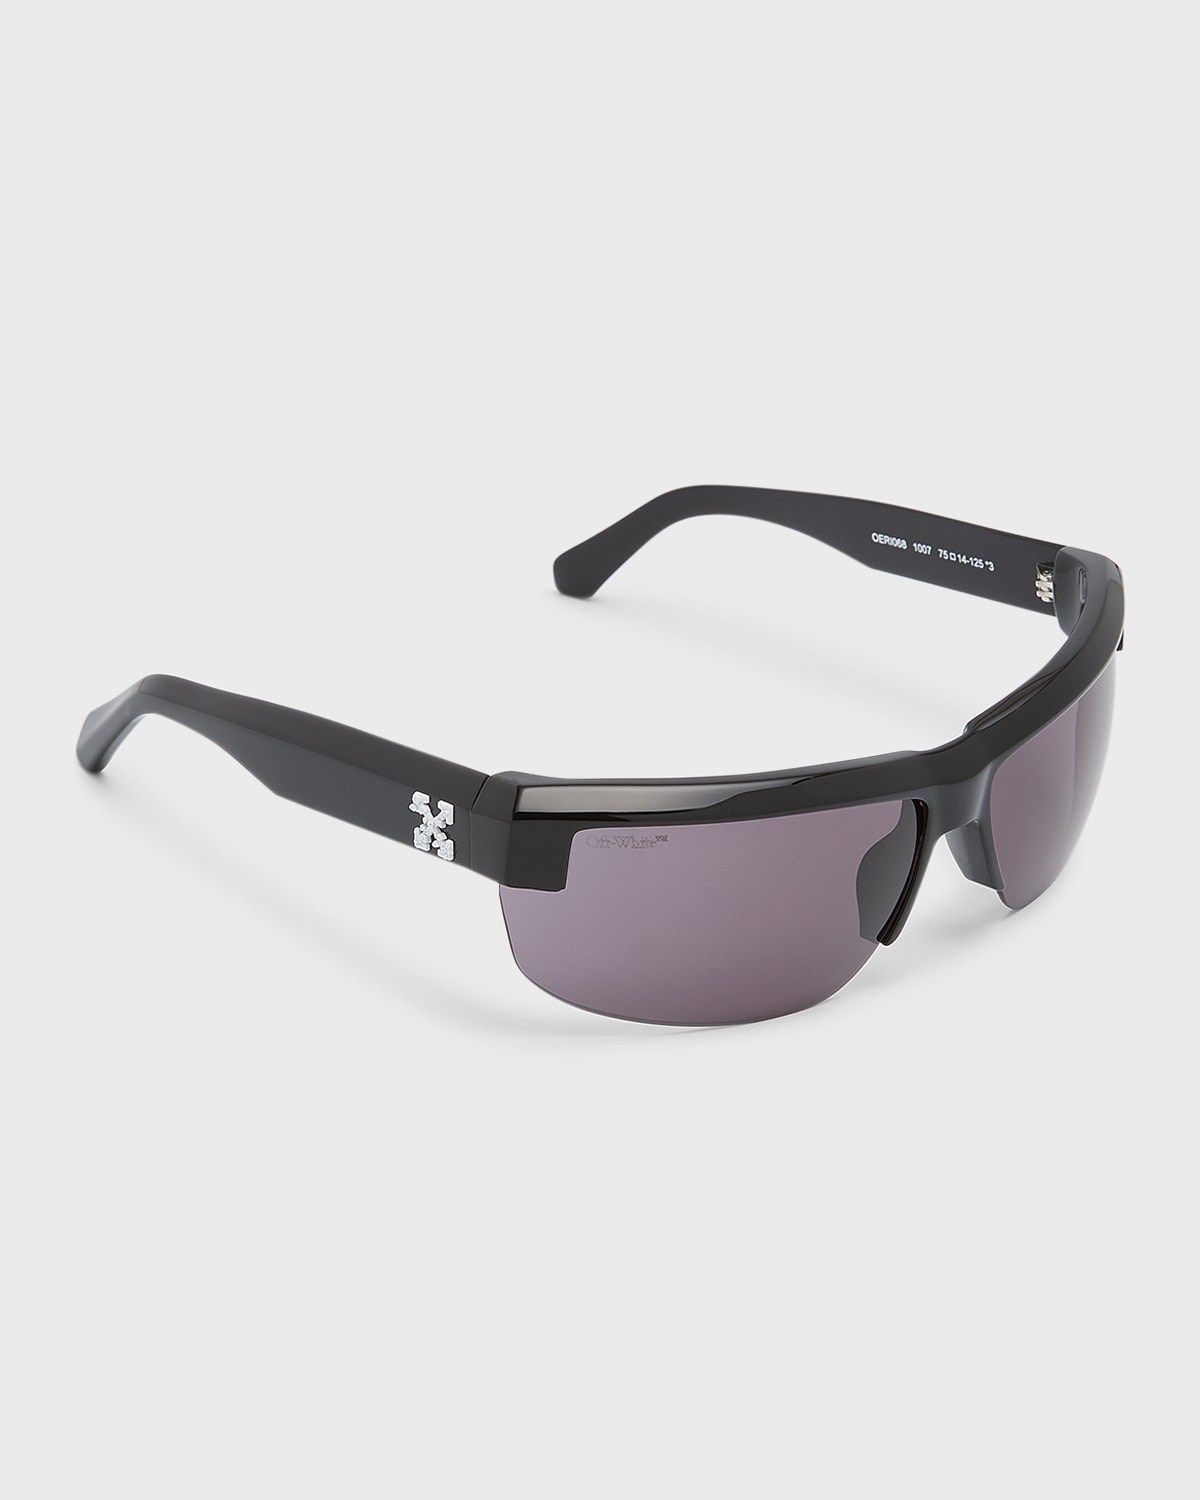 Off-White Men's Volcanite Acetate Wrap Sunglasses